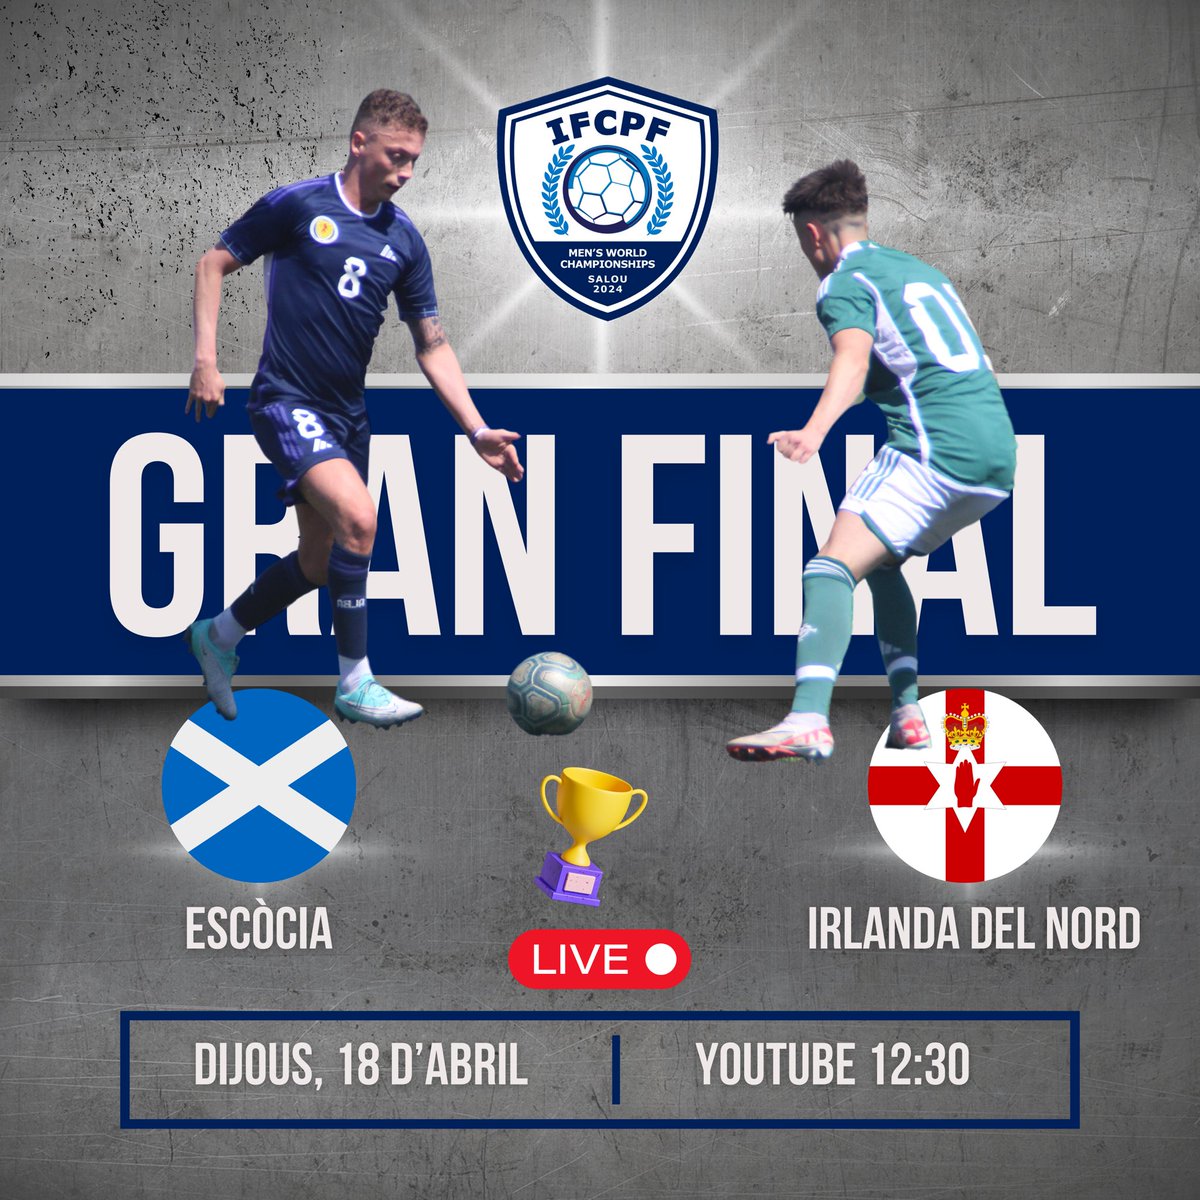 🏆⚽️ La Gran Final! Escòcia 🆚 Irlanda del Nord 🕒 Dijous 18 a les 12:30 📺 En Directe a Youtube youtube.com/live/tWbBI-Bdh… #ifcpfworldchamps #cpfootball #fecpc #futboladaptat